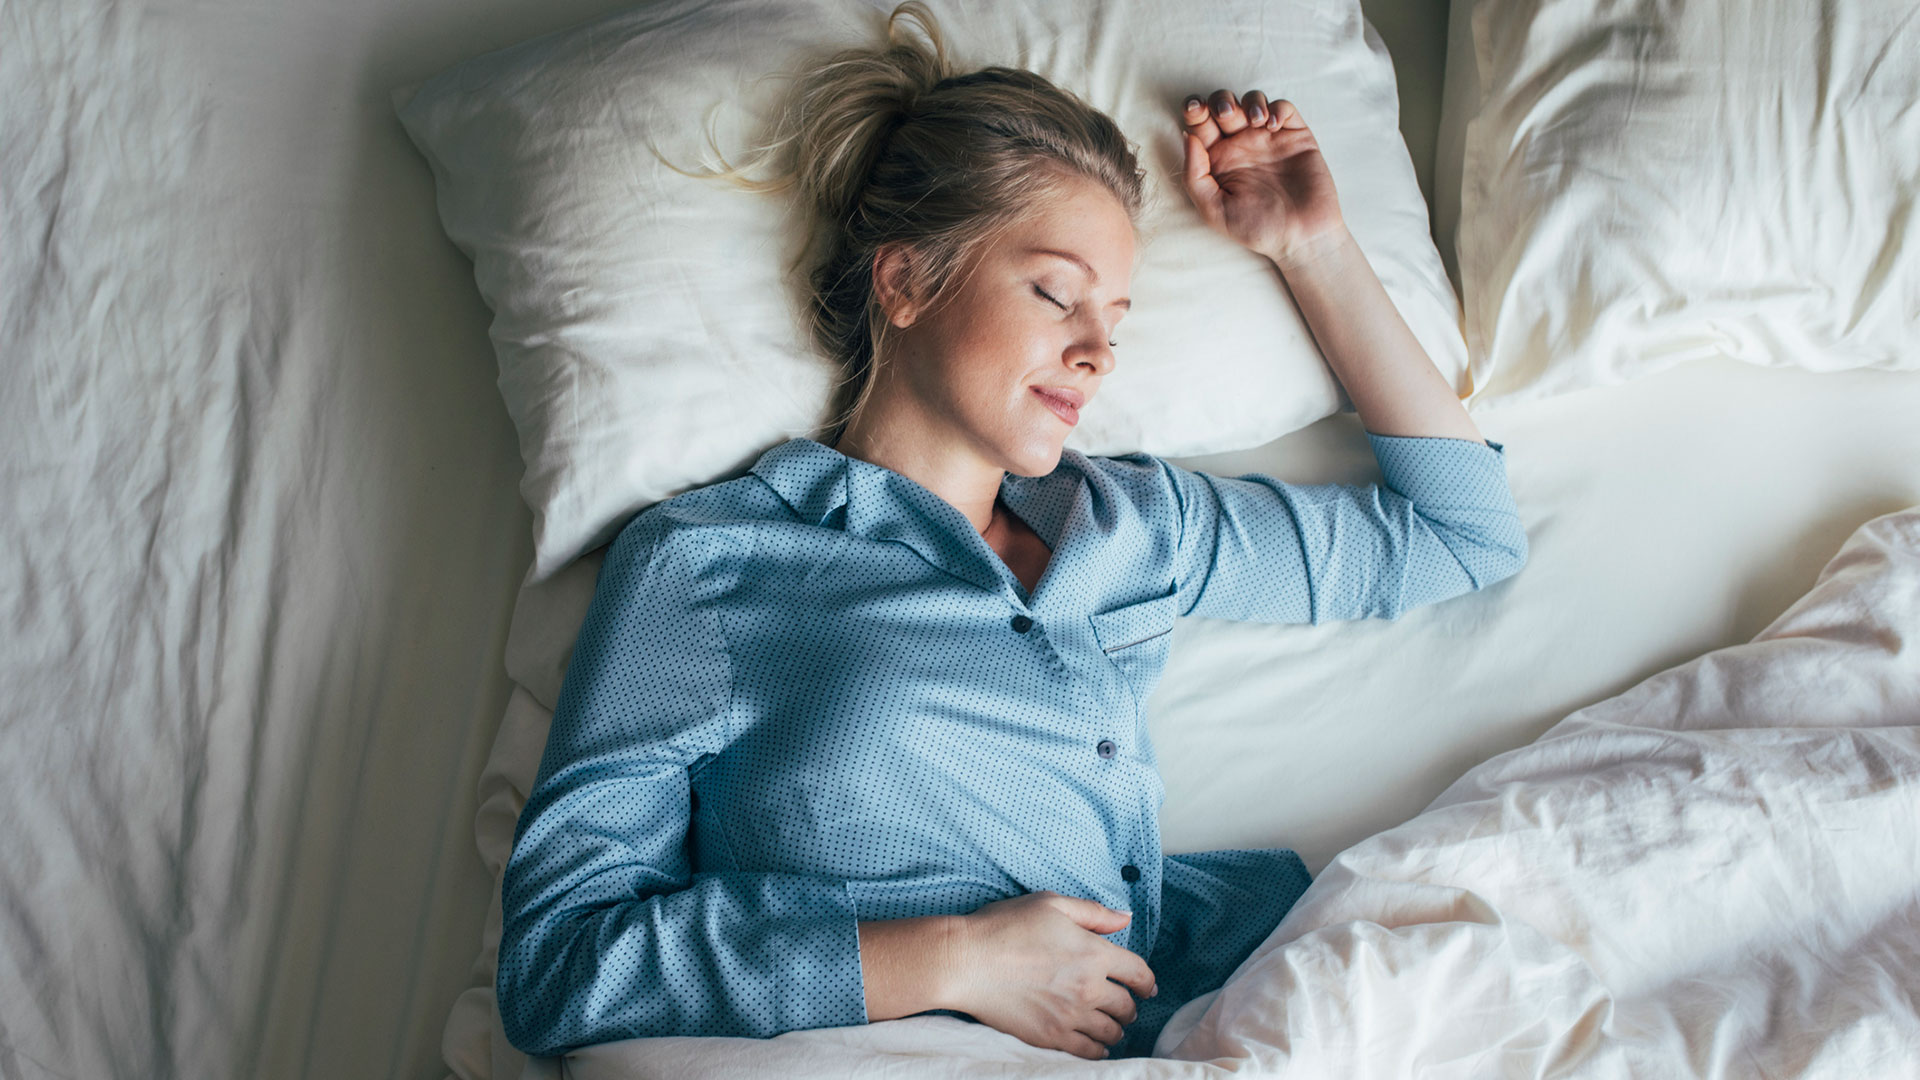 Las personas con apnea obstructiva del sueño a menudo experimentan somnolencia diurna y pueden notar cambios en el estado de ánimo y la concentración (Getty)